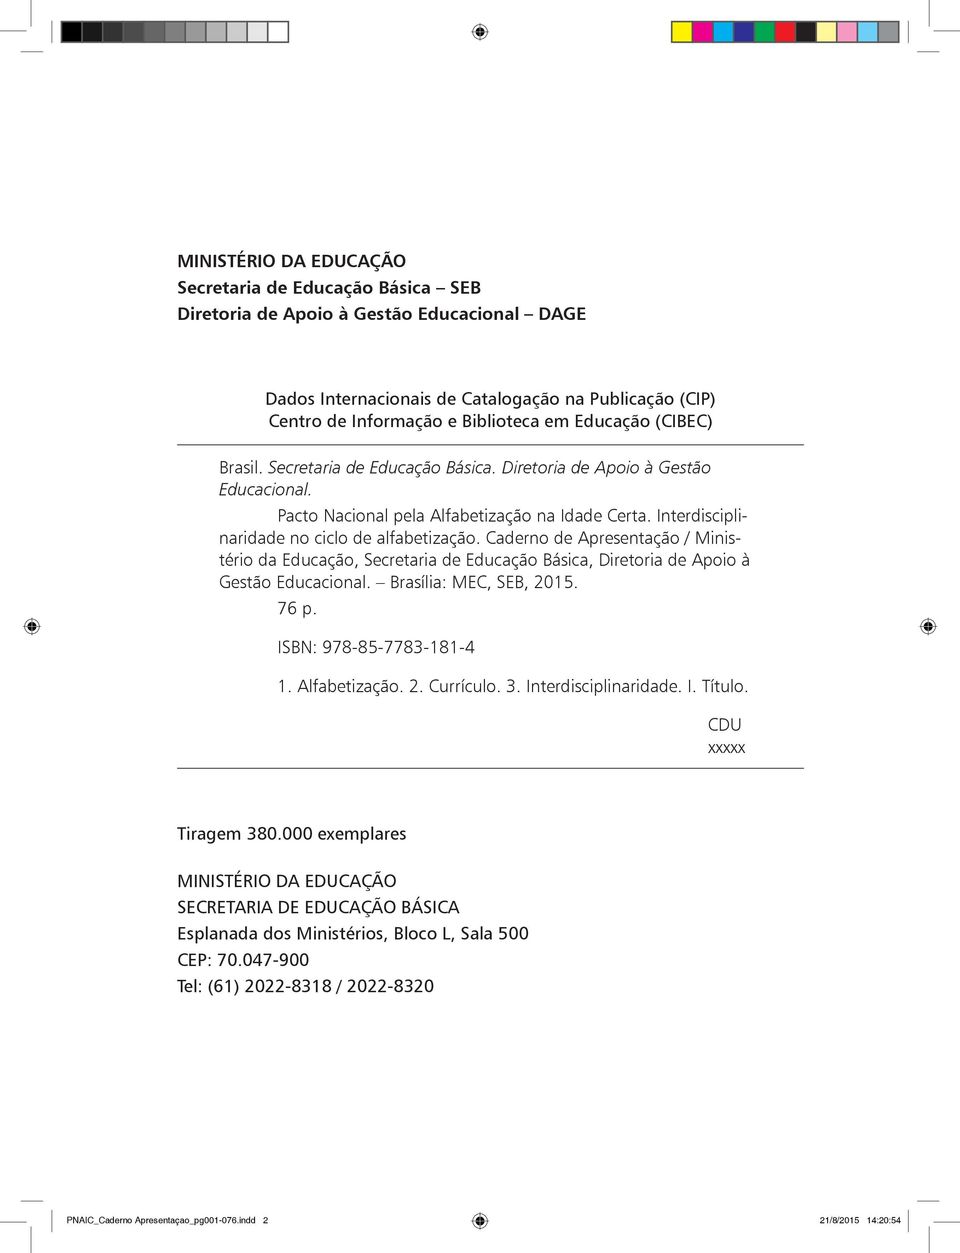 Caderno de Apresentação / Ministério da Educação, Secretaria de Educação Básica, Diretoria de Apoio à Gestão Educacional. Brasília: MEC, SEB, 2015. 76 p. ISBN: 978-85-7783-181-4 1. Alfabetização. 2. Currículo.